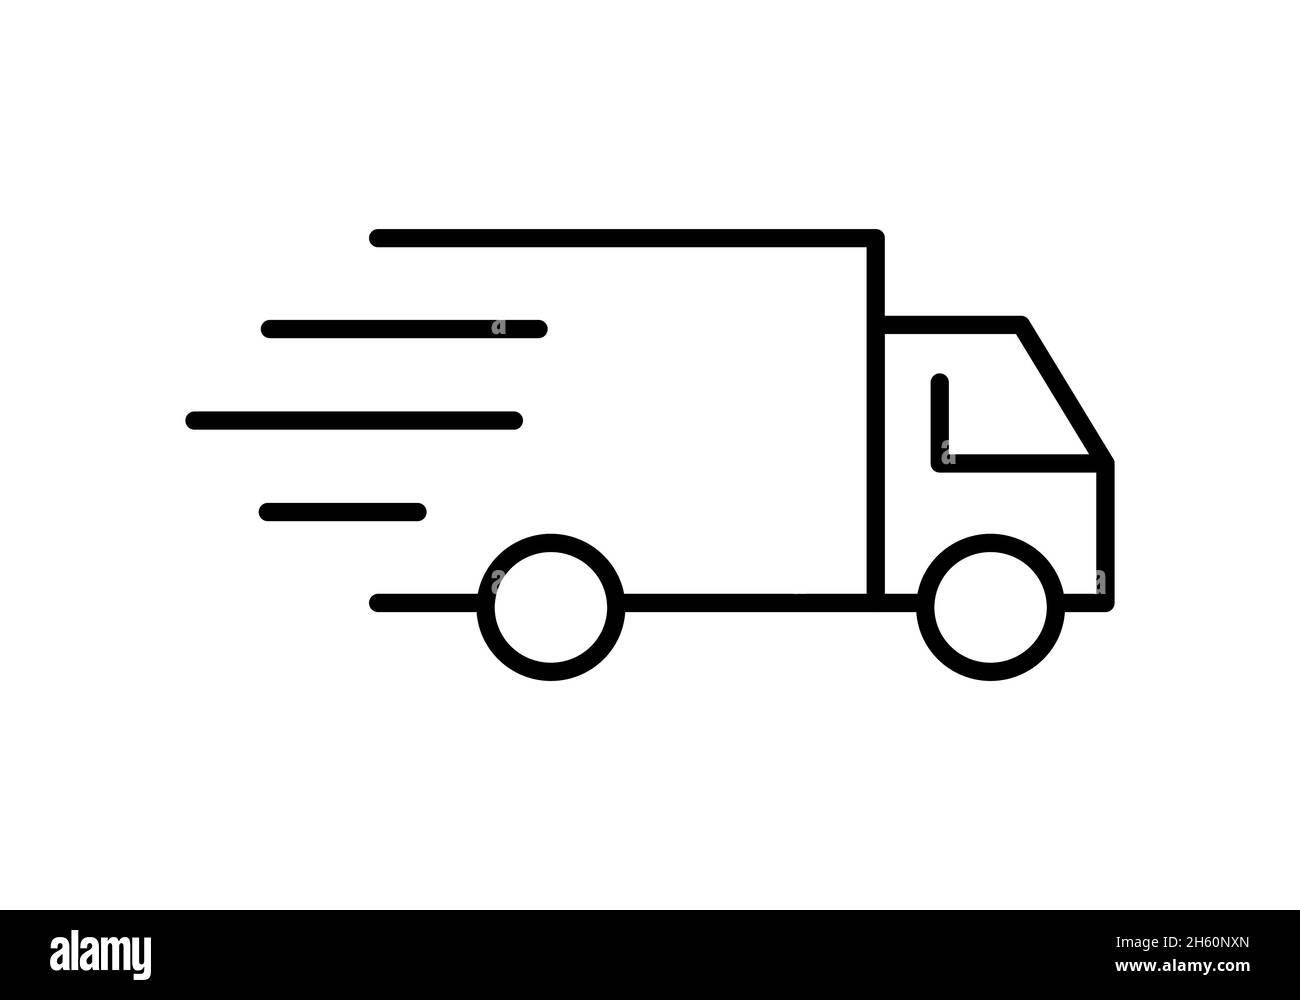 Icône de ligne de camion de livraison.Concept de fret, de distribution, de transport.Idée de livraison rapide.Véhicule en mouvement avec des lignes symbolisant la vitesse.Vecteur, plat. Illustration de Vecteur